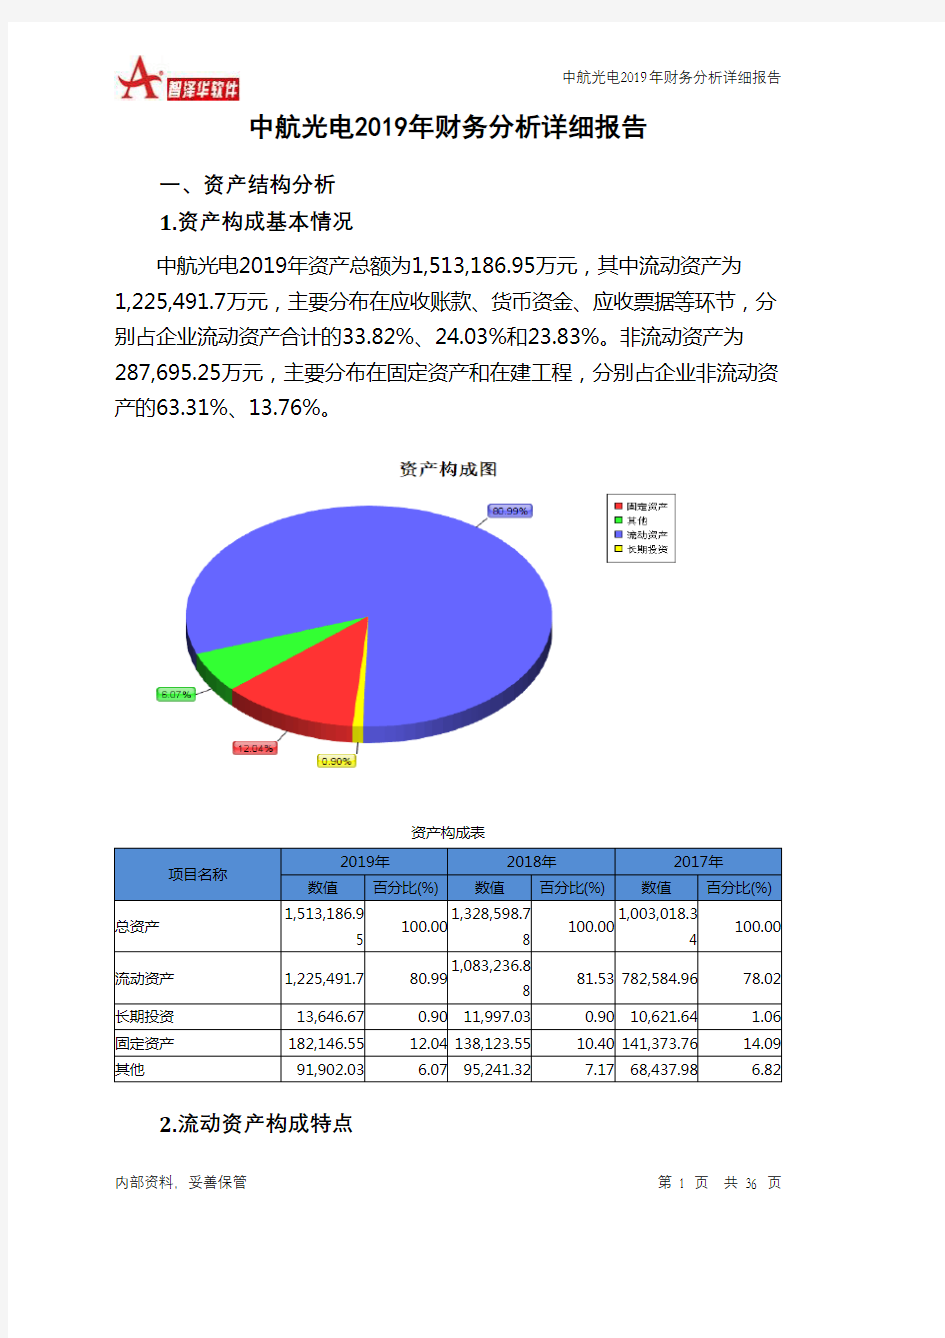 中航光电2019年财务分析详细报告